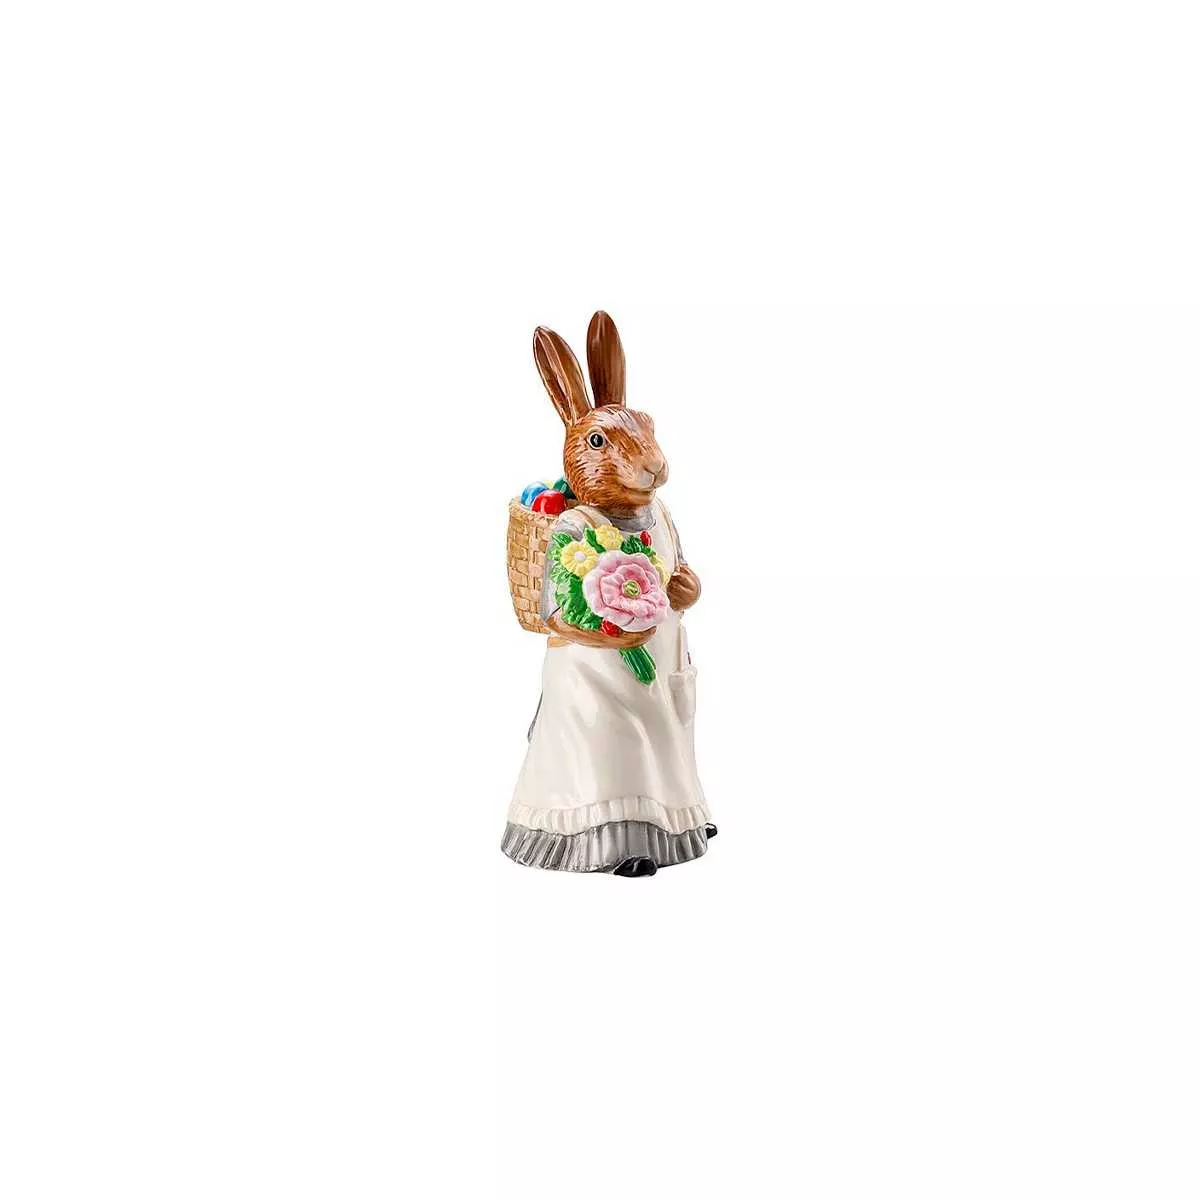 Статуэтка пасхальная «Леди кролик с корзиной» Hutschenreuther Hasenfiguren Dekoriert, высота 13,5 см (02350-726022-88840) - Фото nav 4